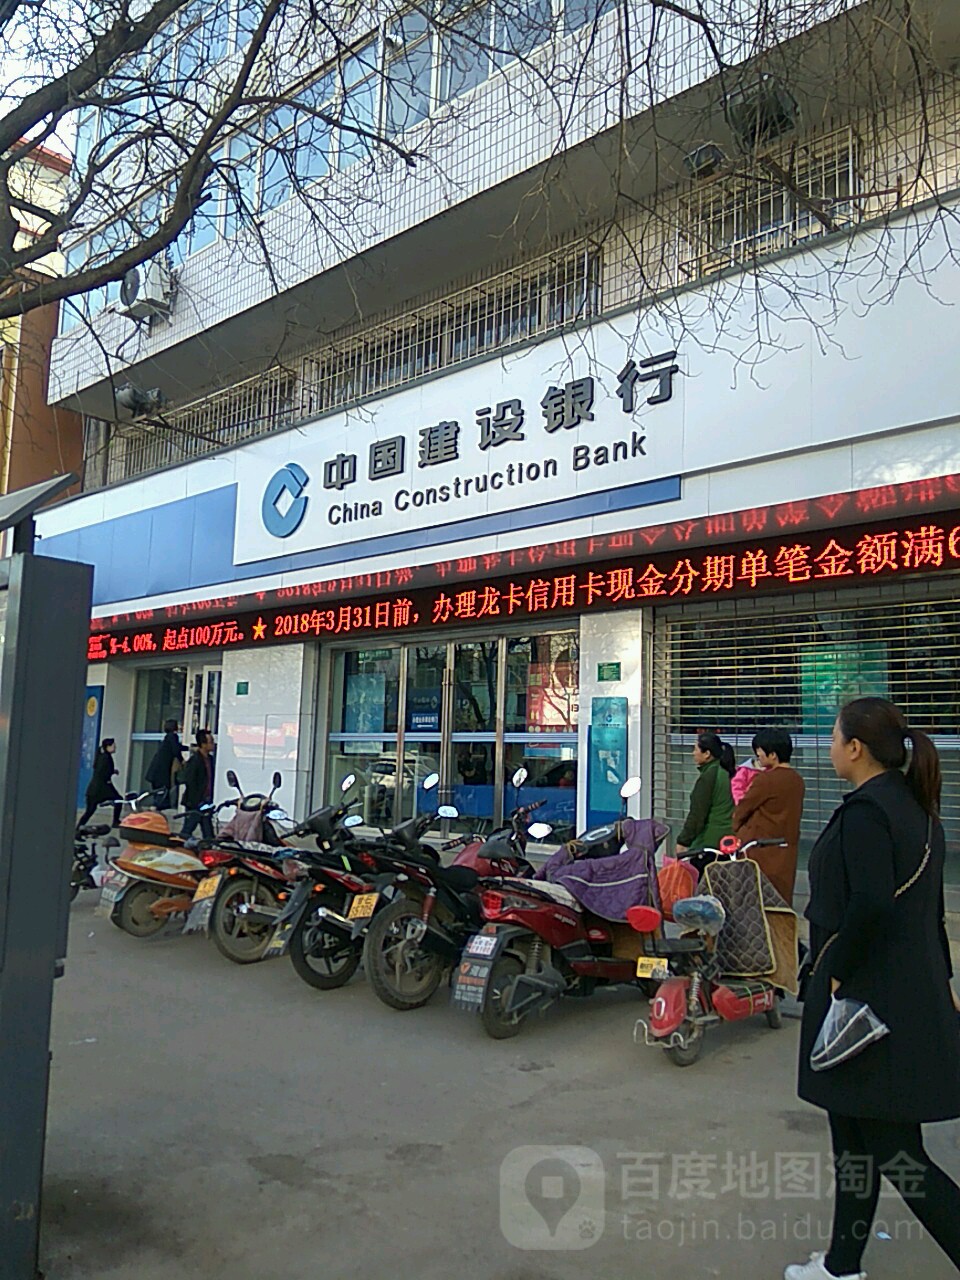 中國建設銀行24小時自助銀行(甘谷支行)